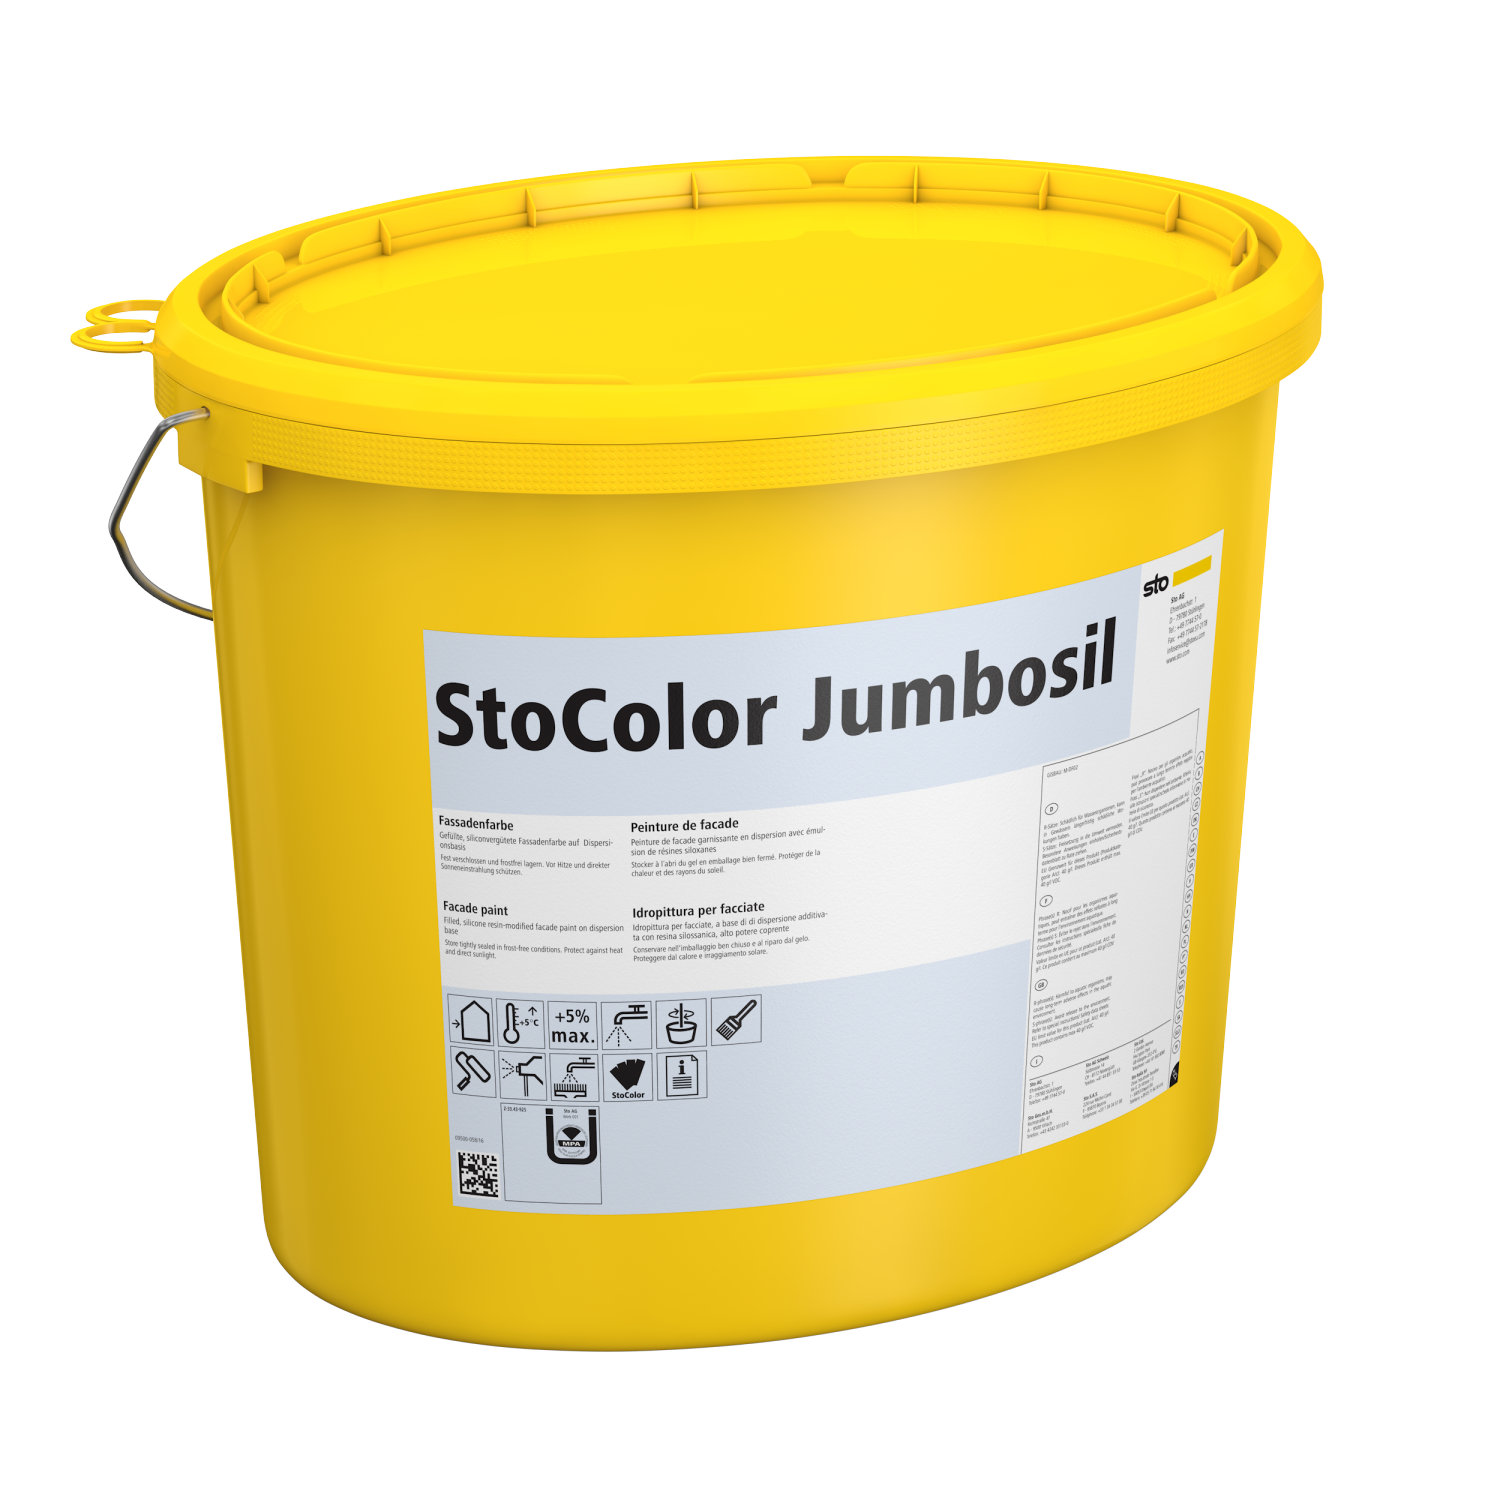 StoColorJumbosil-1.jpeg